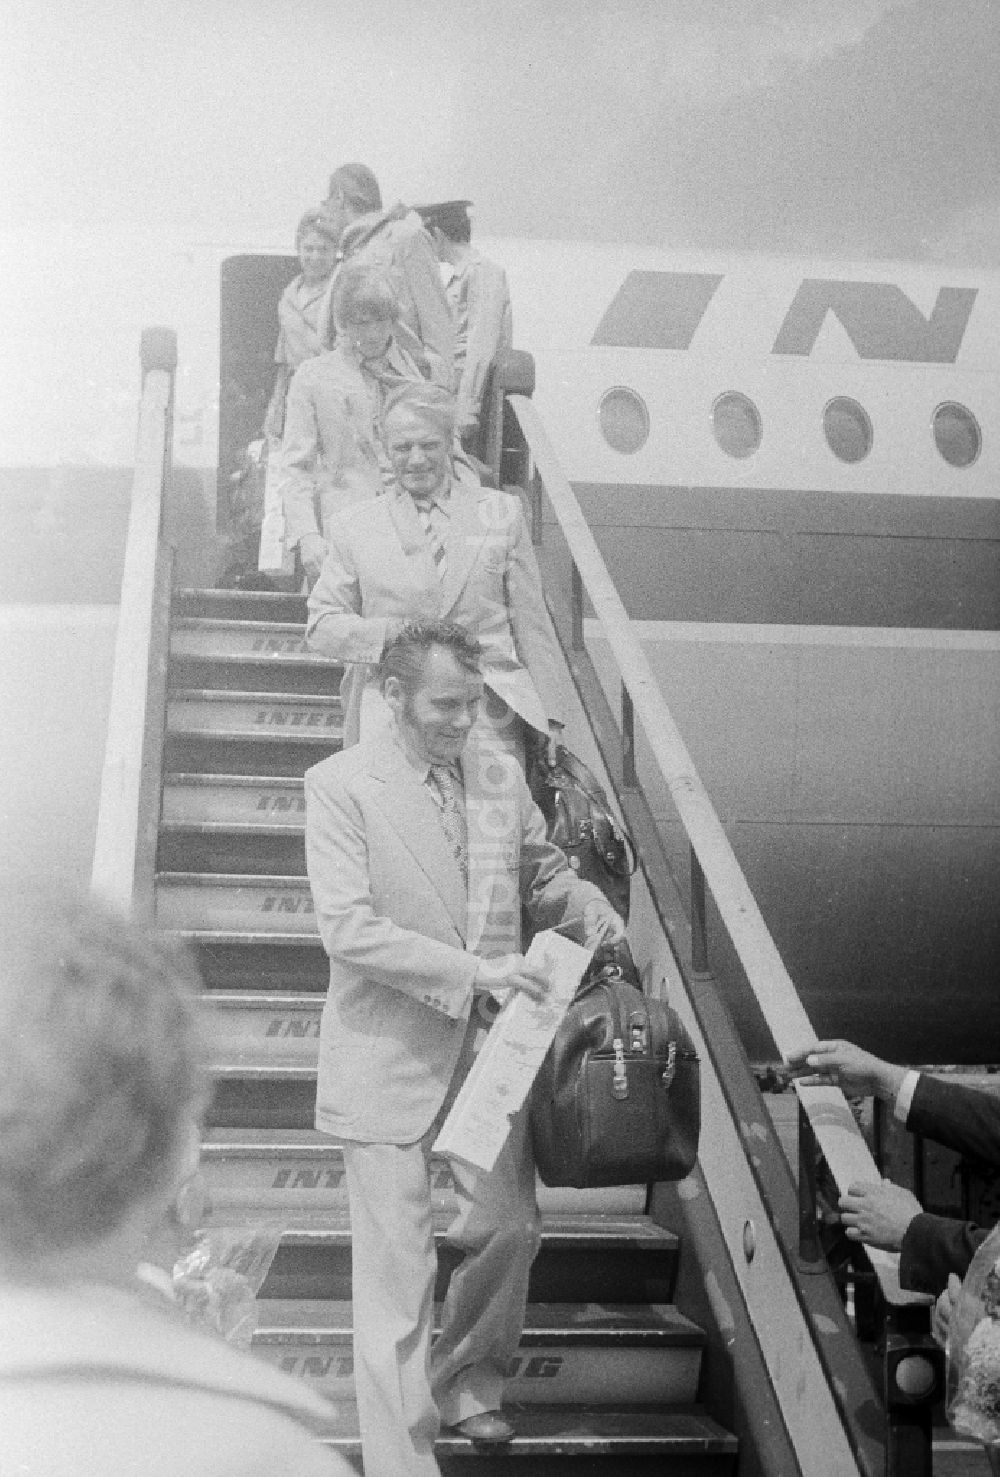 Schönefeld: Ankunft der DDR-Olympiamannschaft auf dem Gelände des Flughafen Schönefeld in Schönefeld in Brandenburg in der DDR